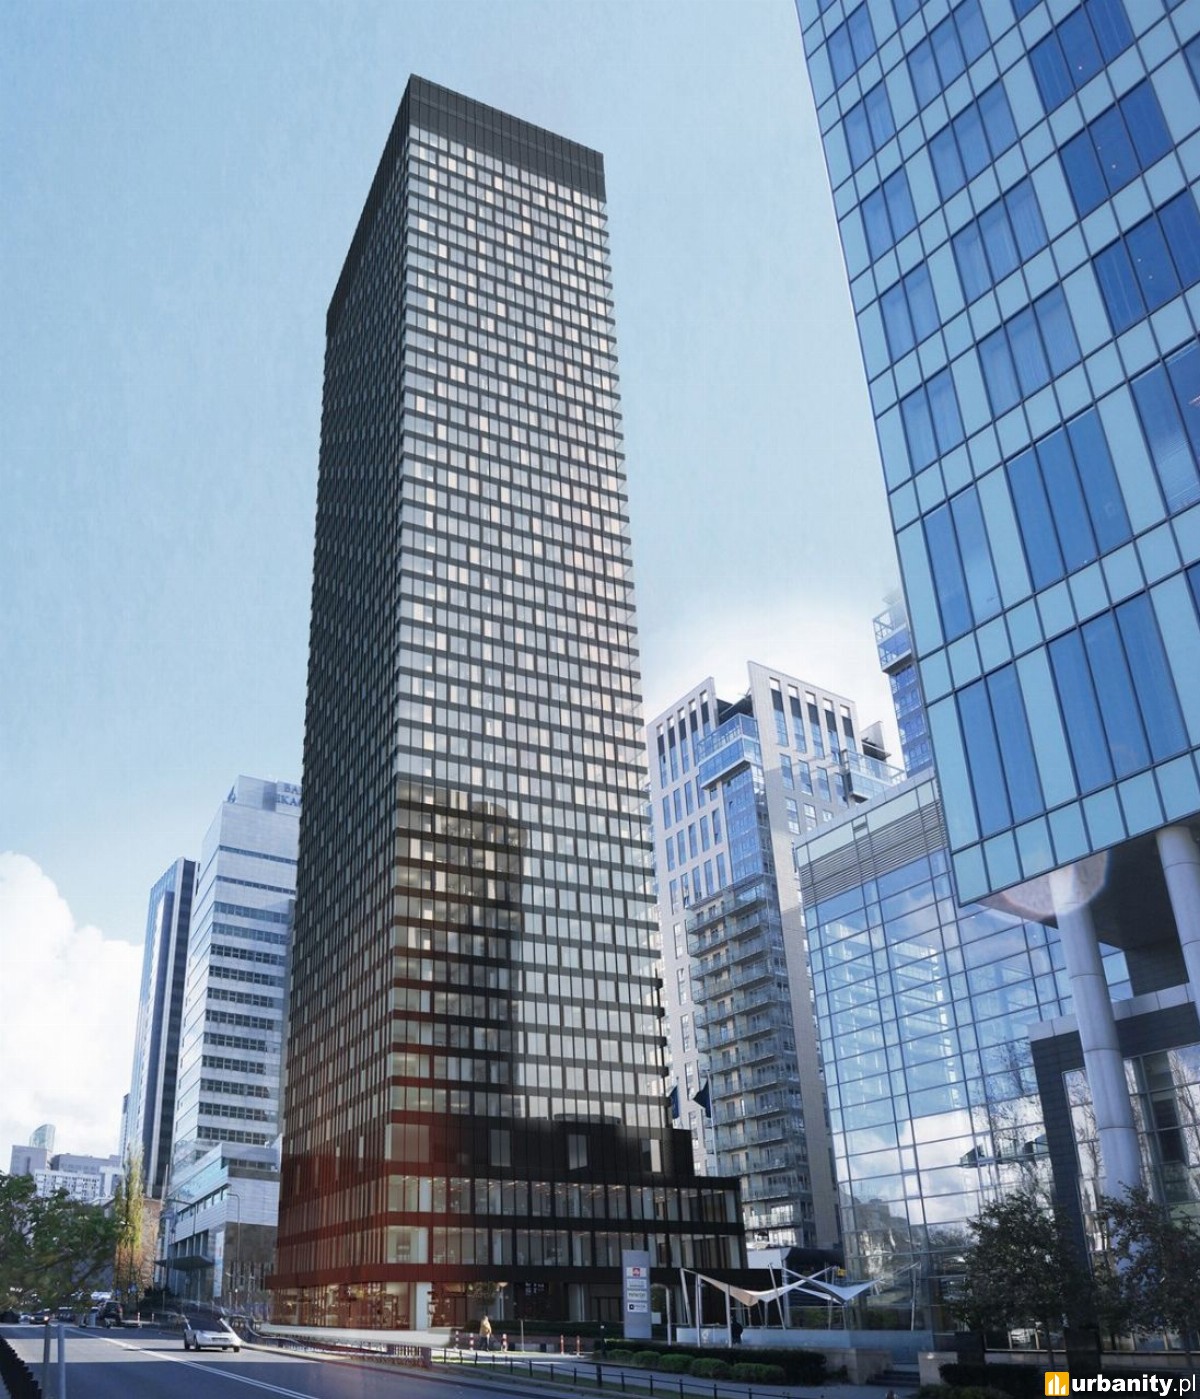 Ruszyła realizacja 170-metrowego wieżowca przy hotelu Hilton w ścisłym centrum Warszawy